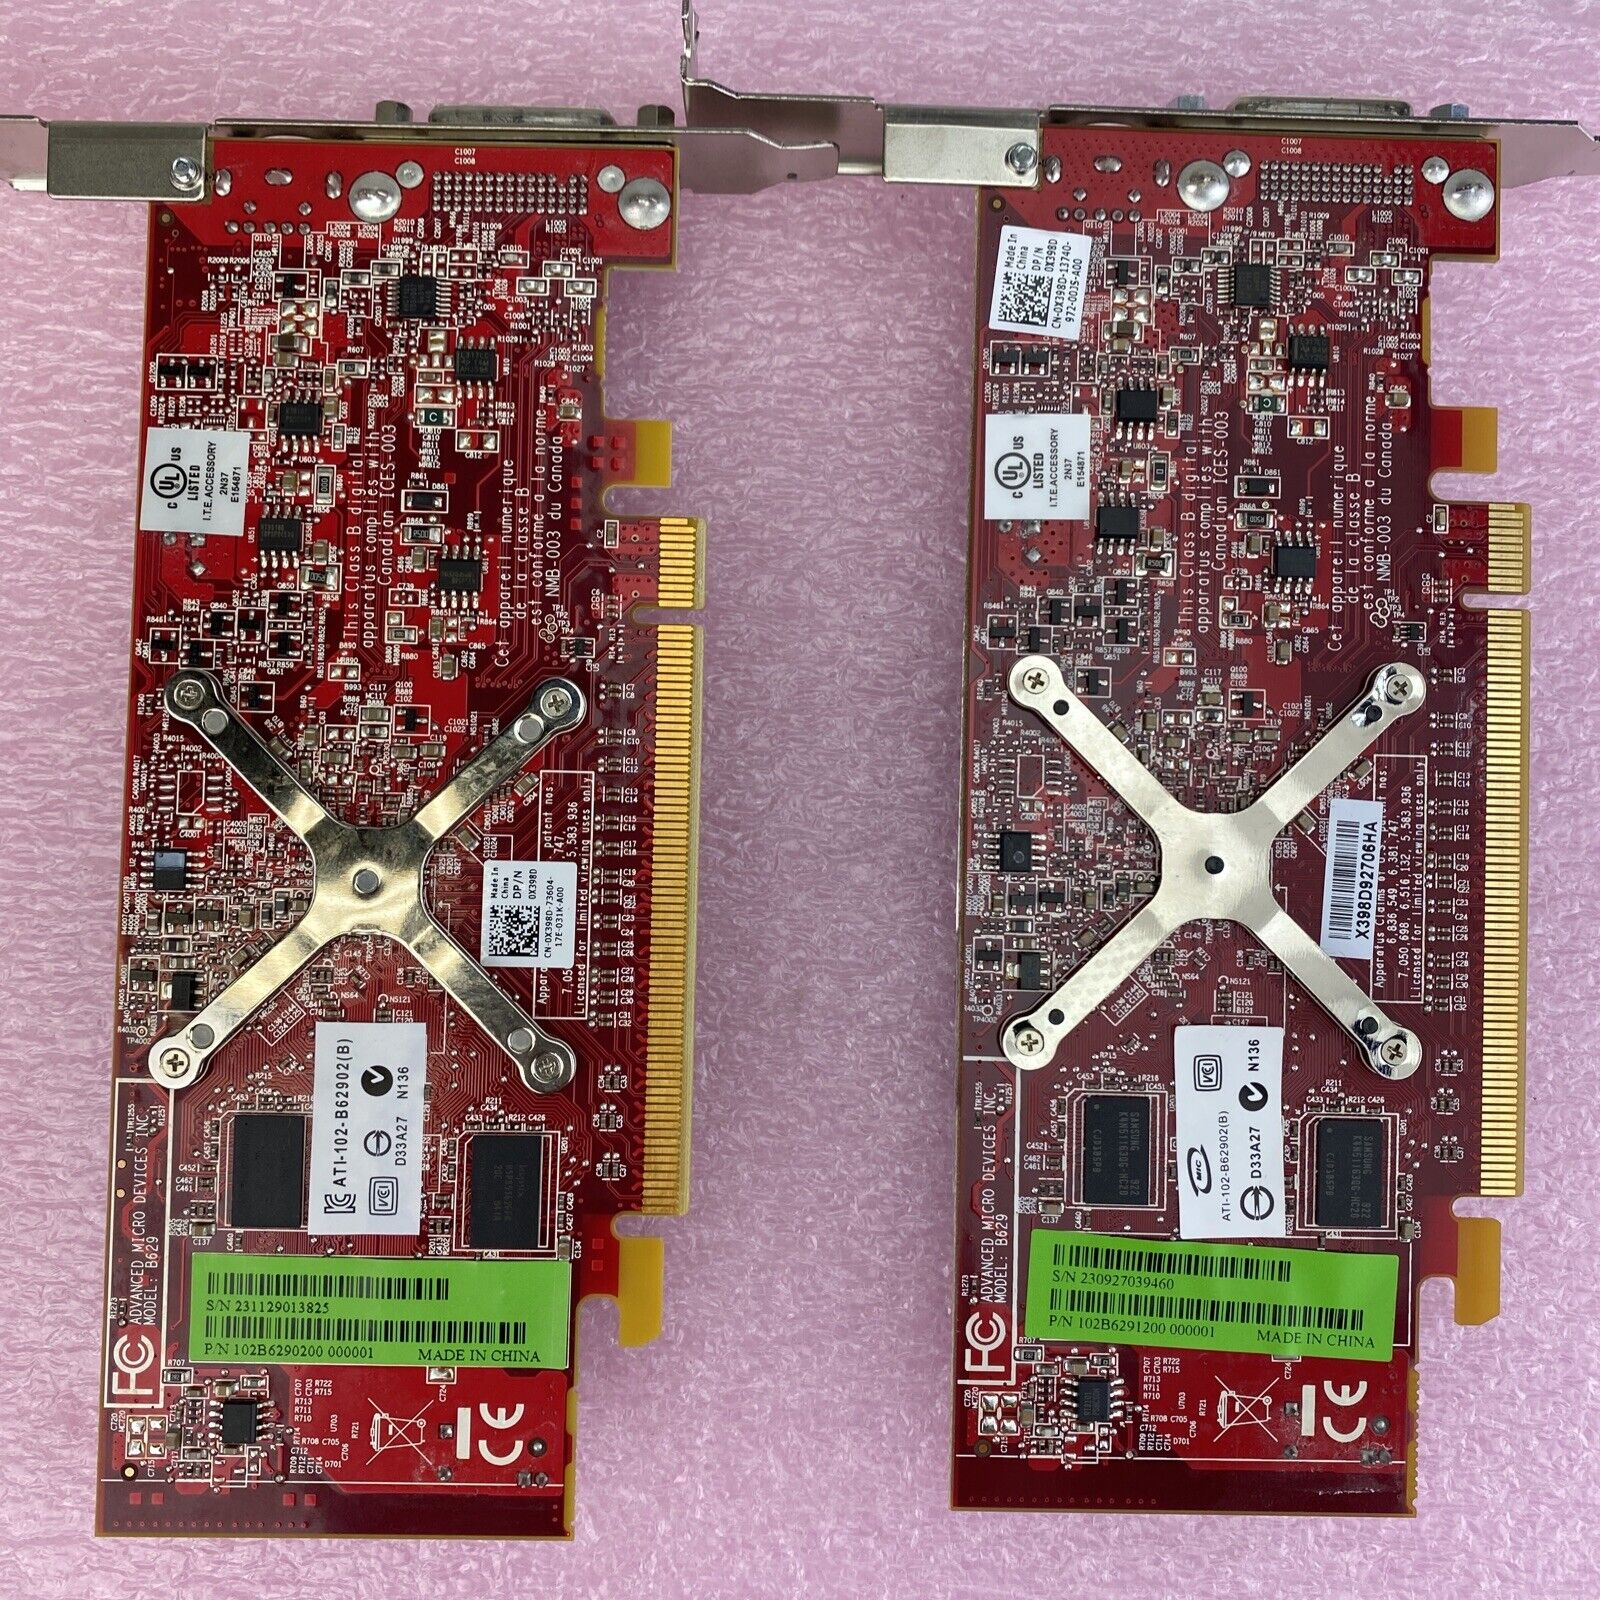 Lot of 2 ATI 102B6291200 Radeon HD3450 256MB PCIe DMS-59 S-Video GPU 0X398D